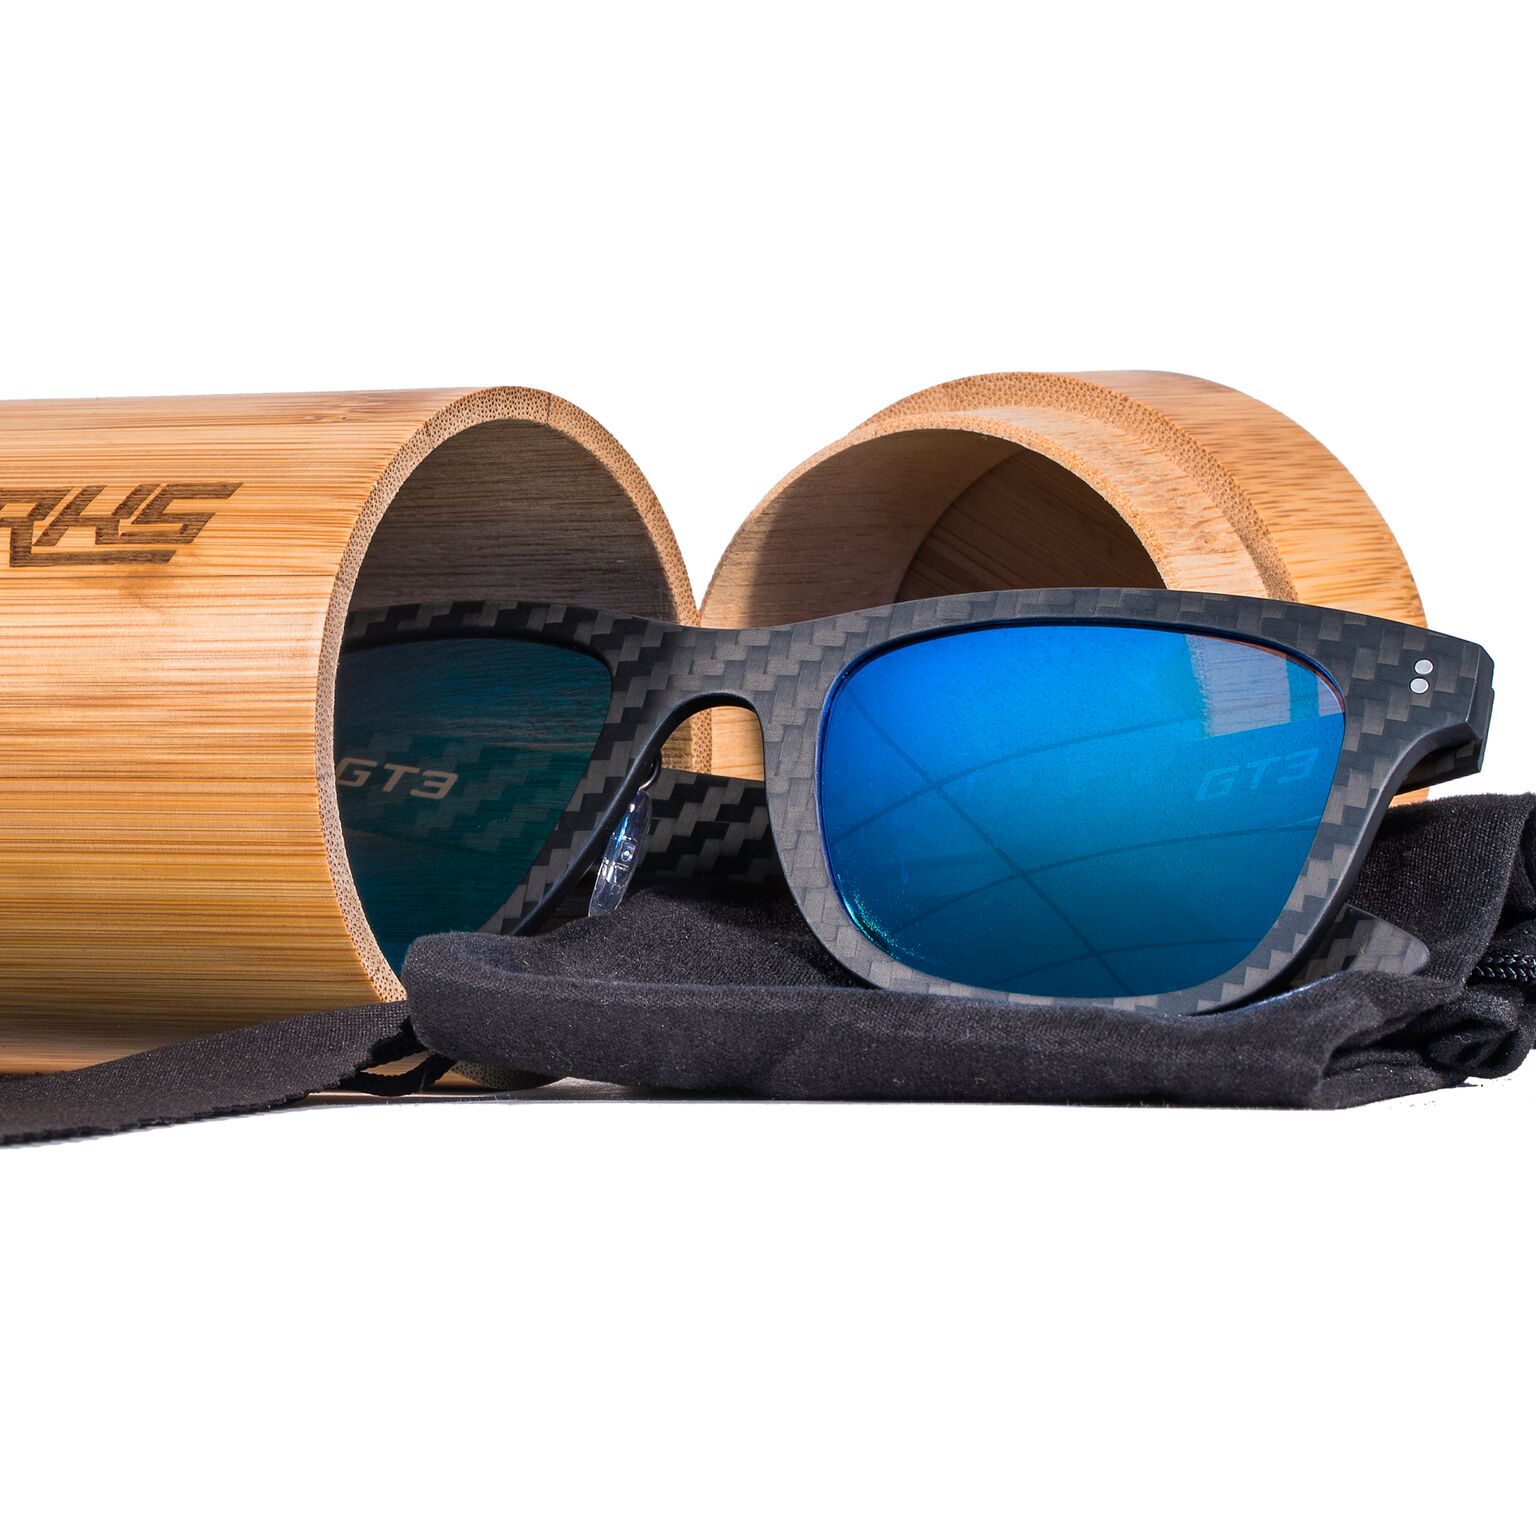 GT3 sunglasses Sea Blue Mirror 5